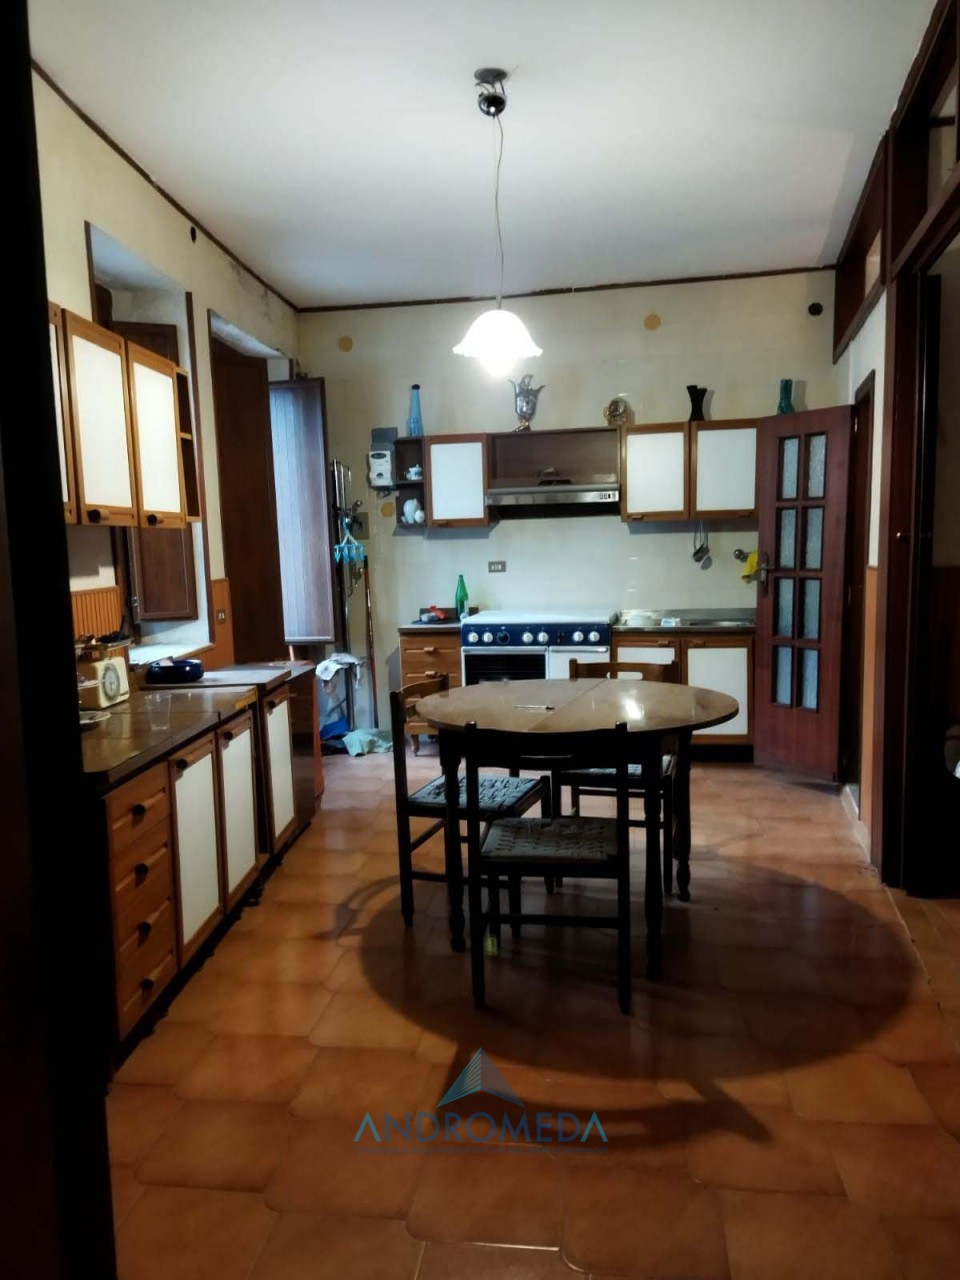 Appartamento in vendita a San Martino Valle Caudina, 2 locali, prezzo € 18.000 | PortaleAgenzieImmobiliari.it